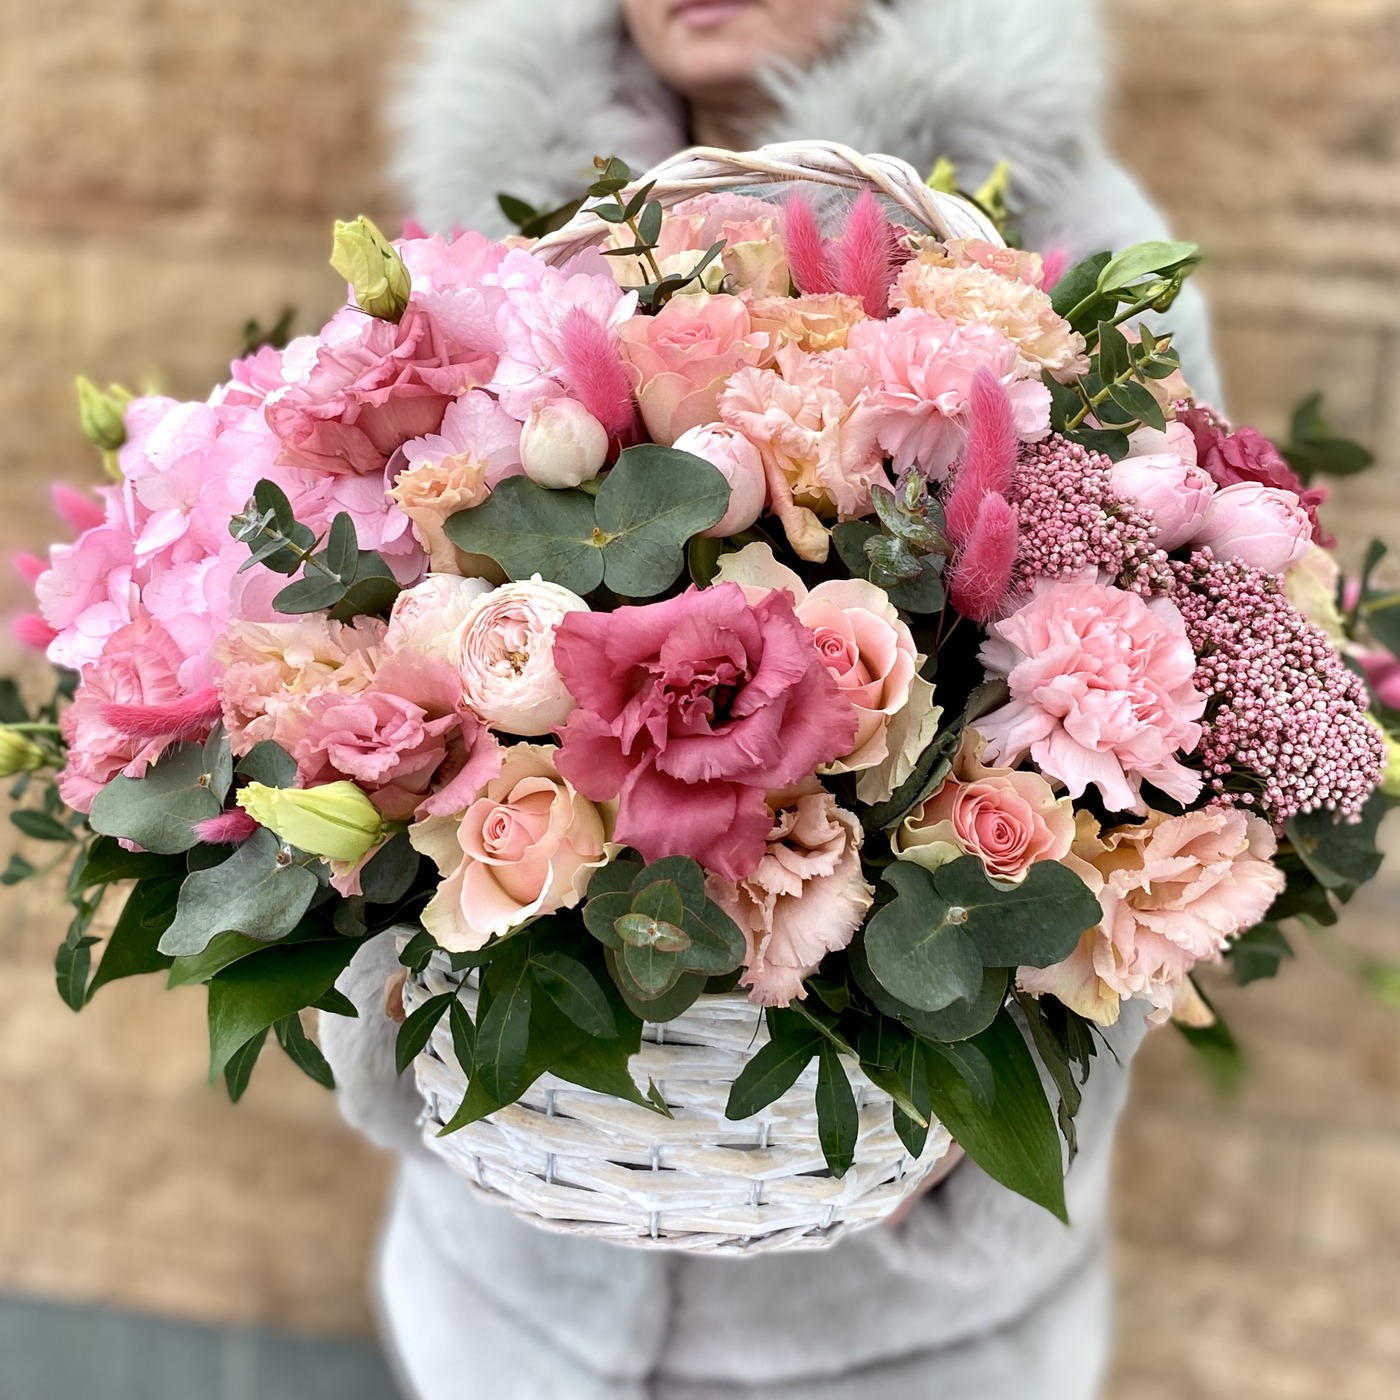 Купить розовый свадебный букет на свадьбу с доставкой по Москве и области